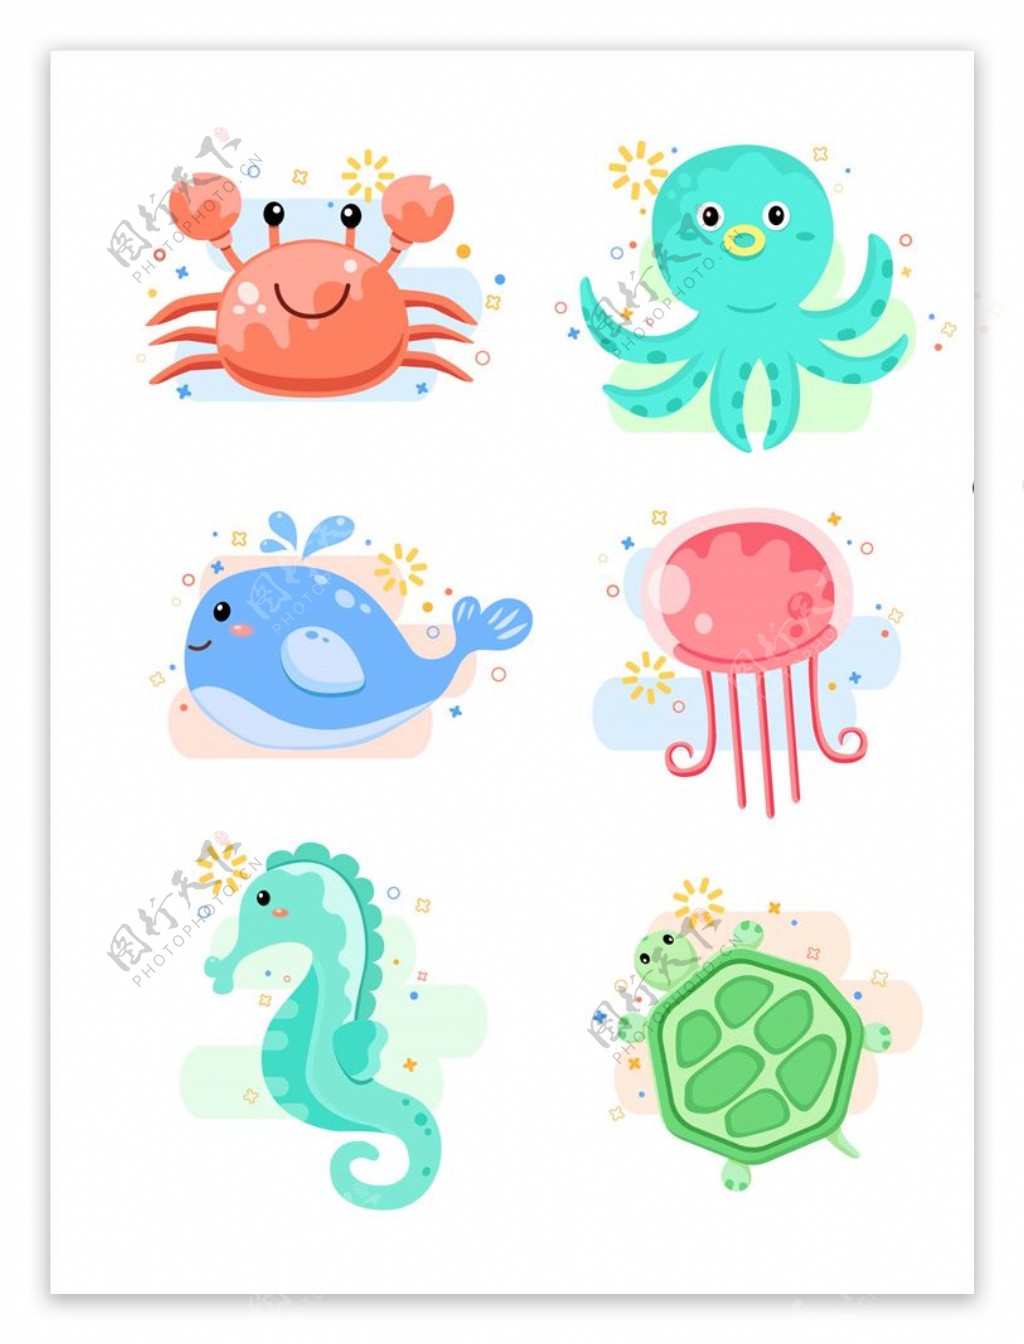 海洋动物